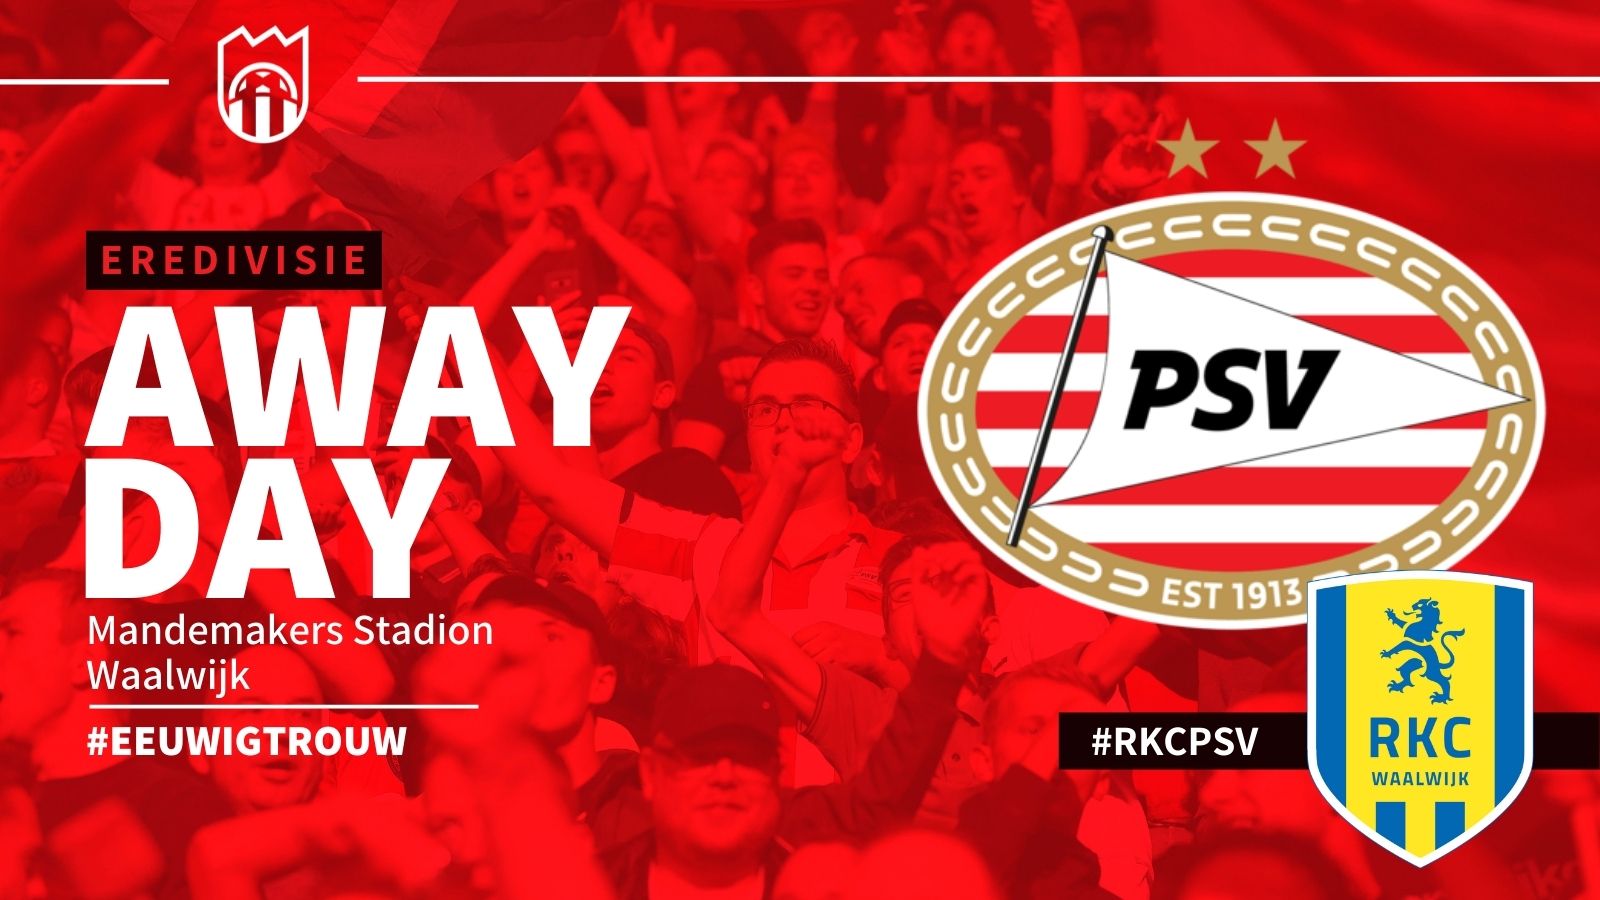 Eredivisie : RKC Waalwijk - PSV (1 - 4)